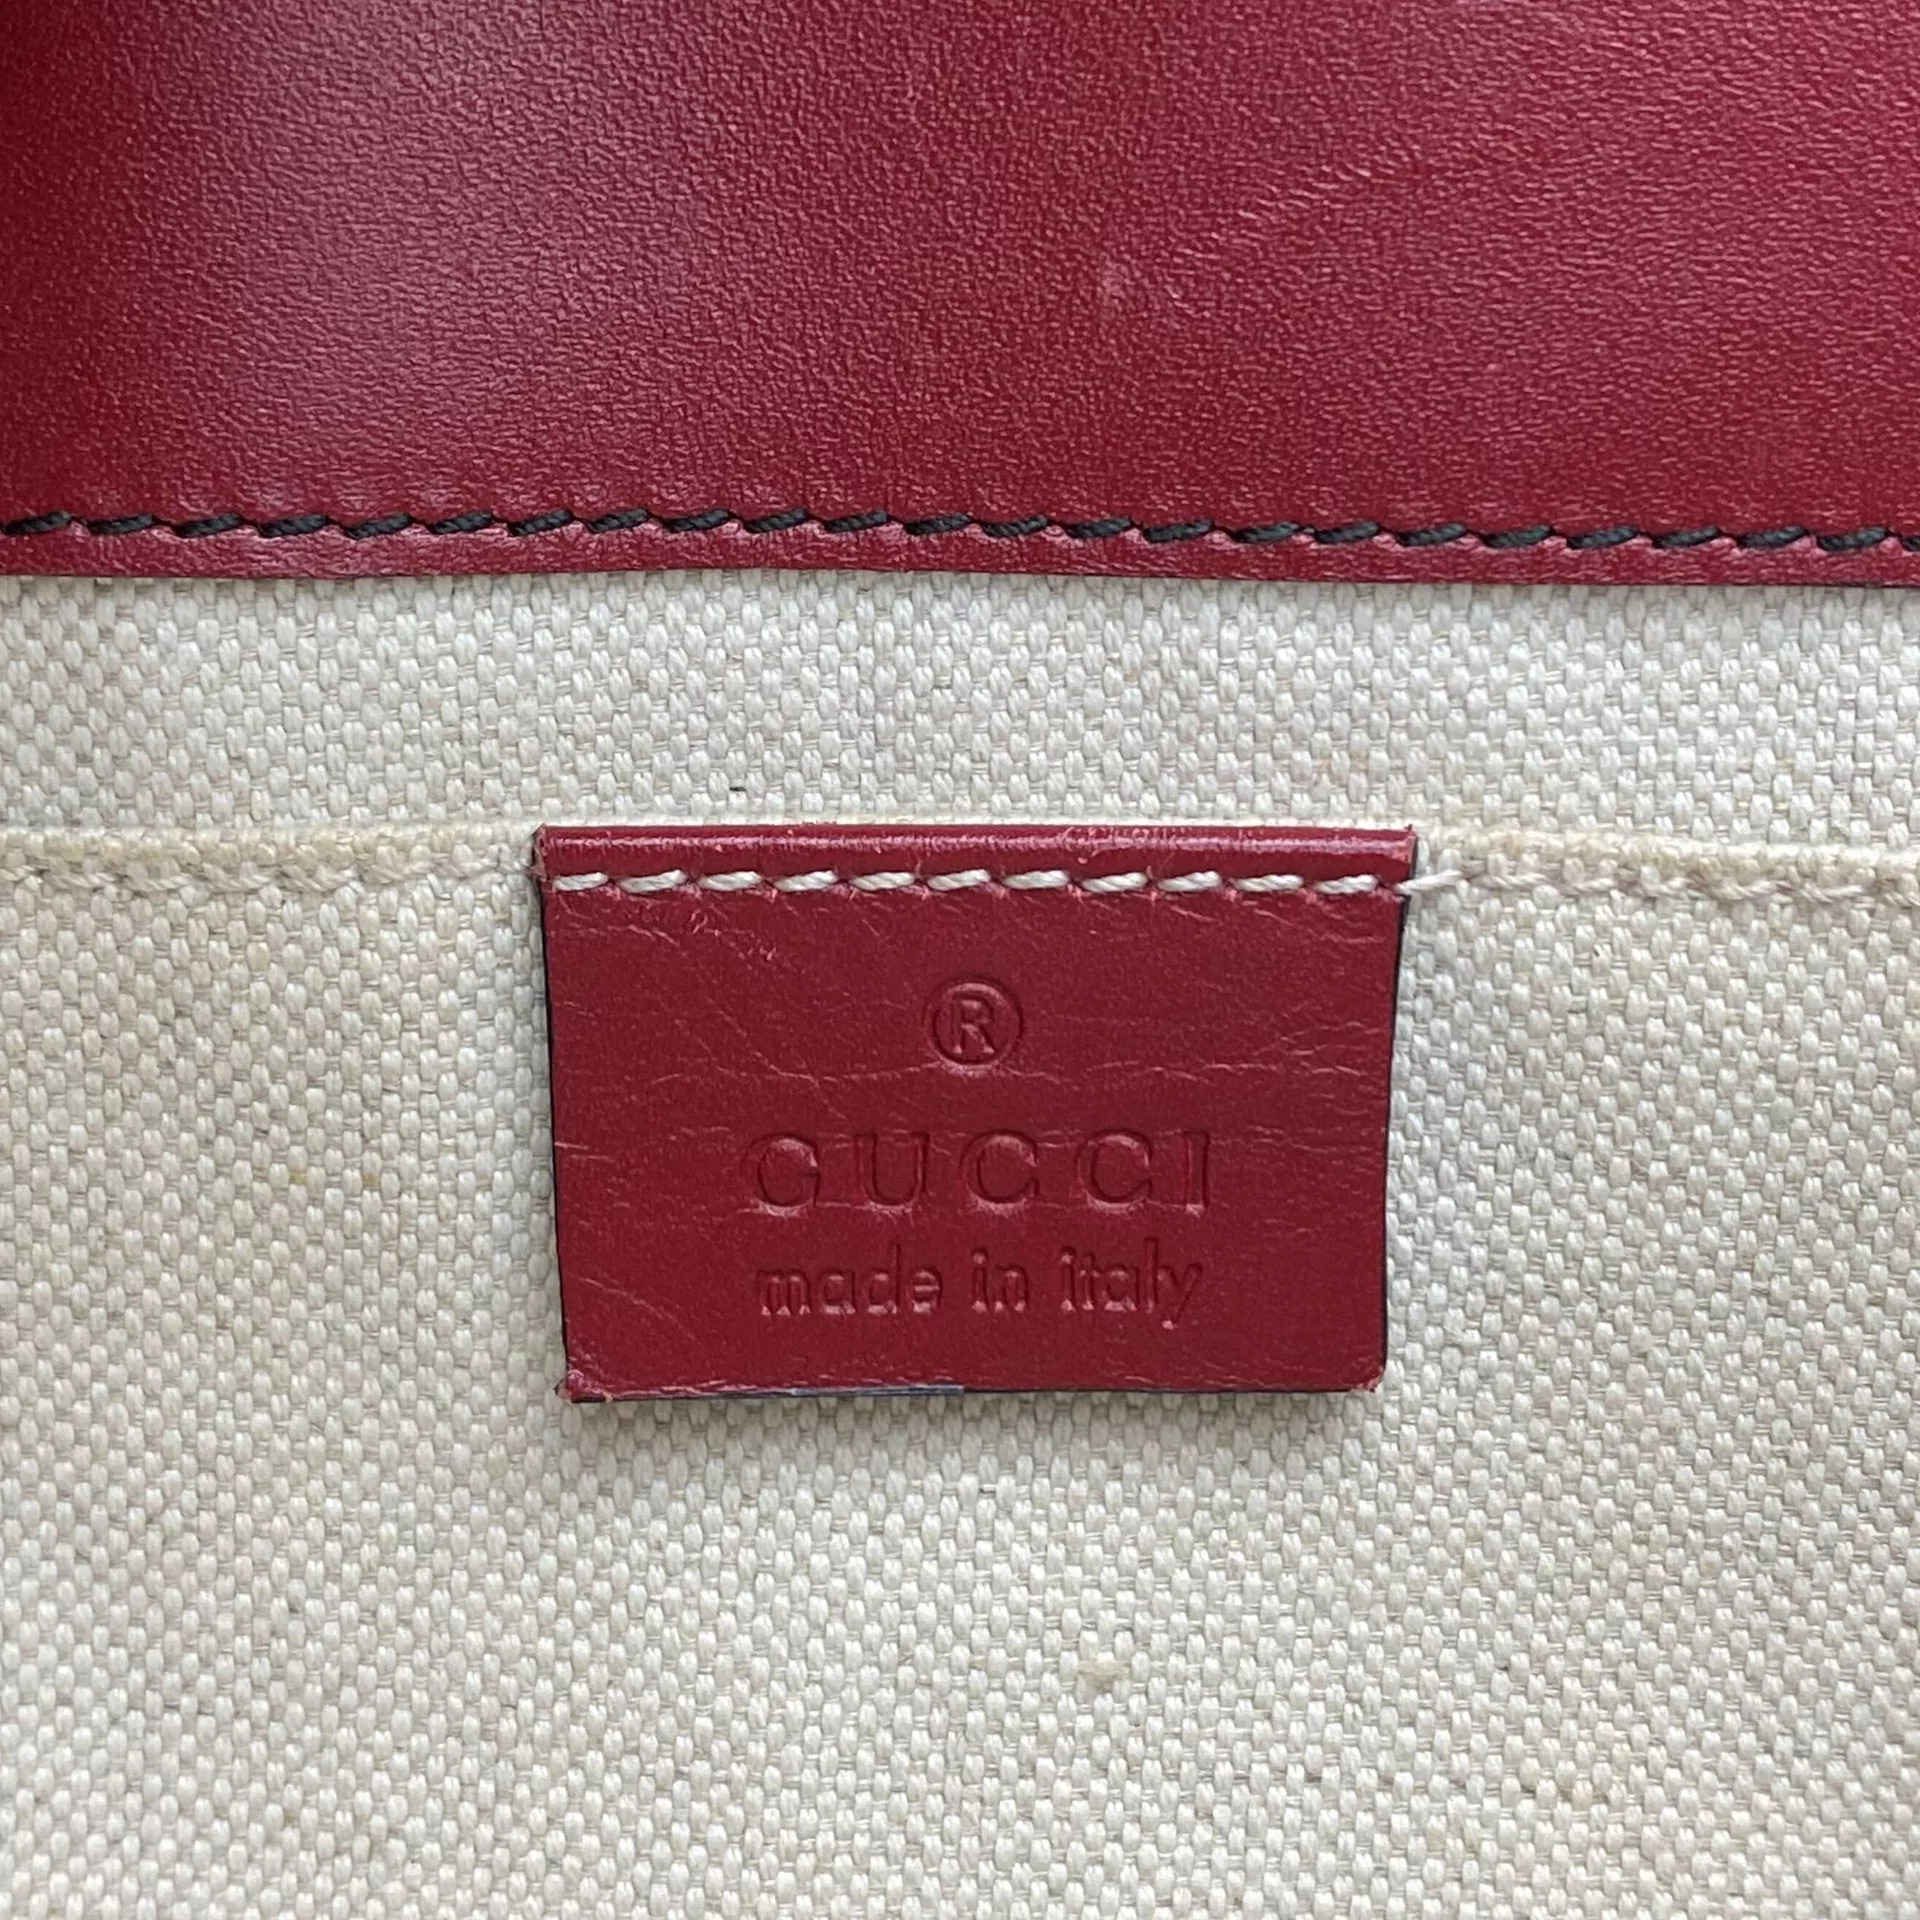 Bolsa Gucci Emily Vermelha